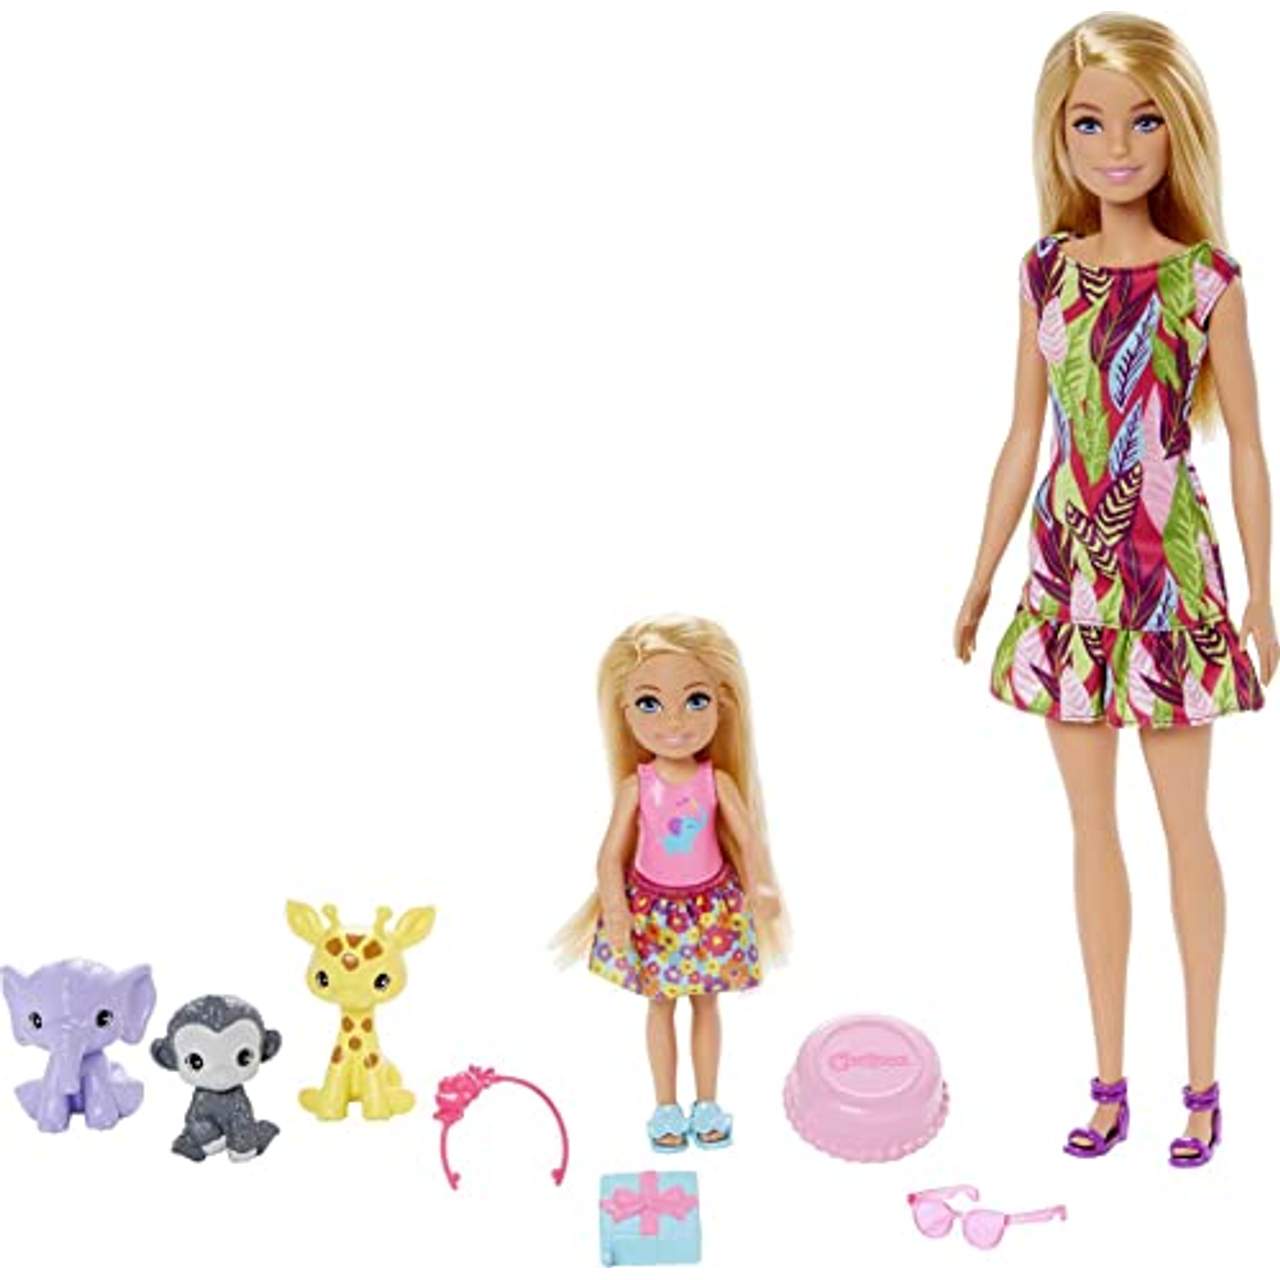 Barbie GTM82 Barbie und Chelsea Dschungelabenteuer Puppen